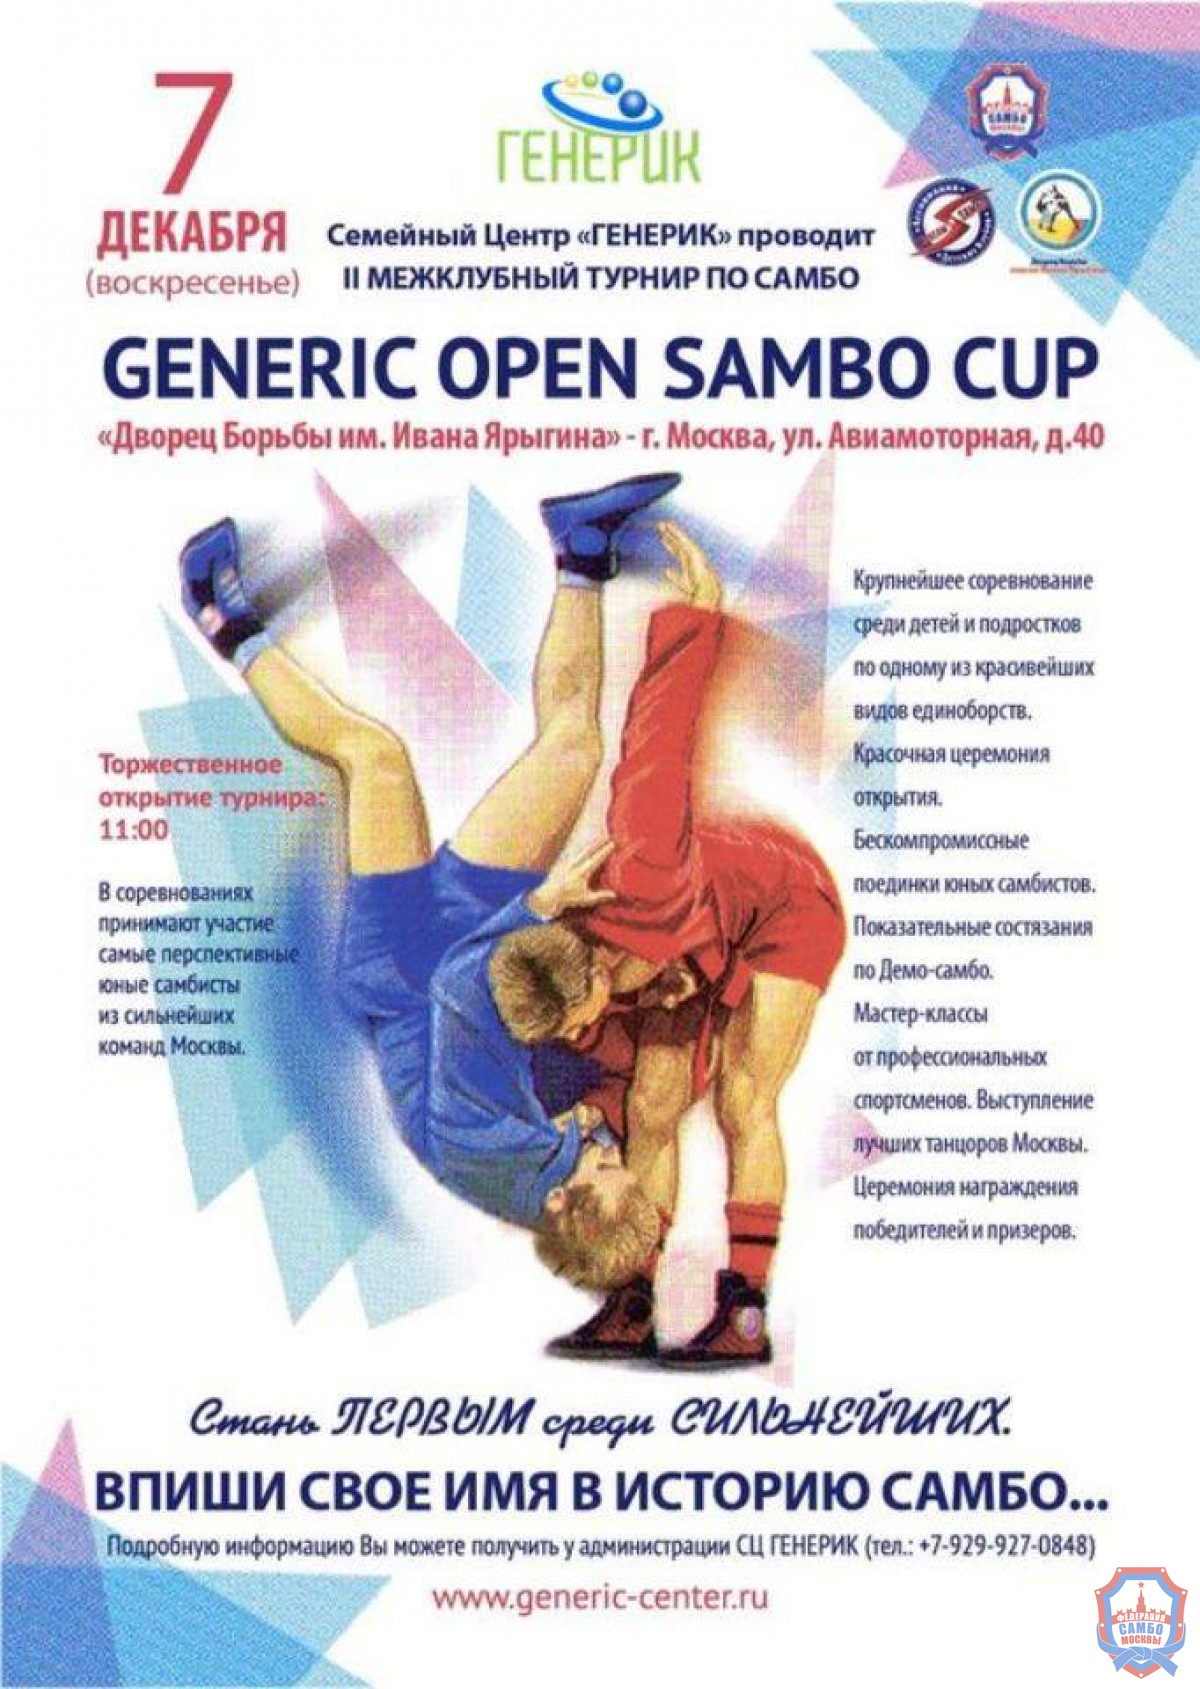 7 декабря во дворце борьбы им. Ивана Ярыгина состоится межклубный турнир по самбо
